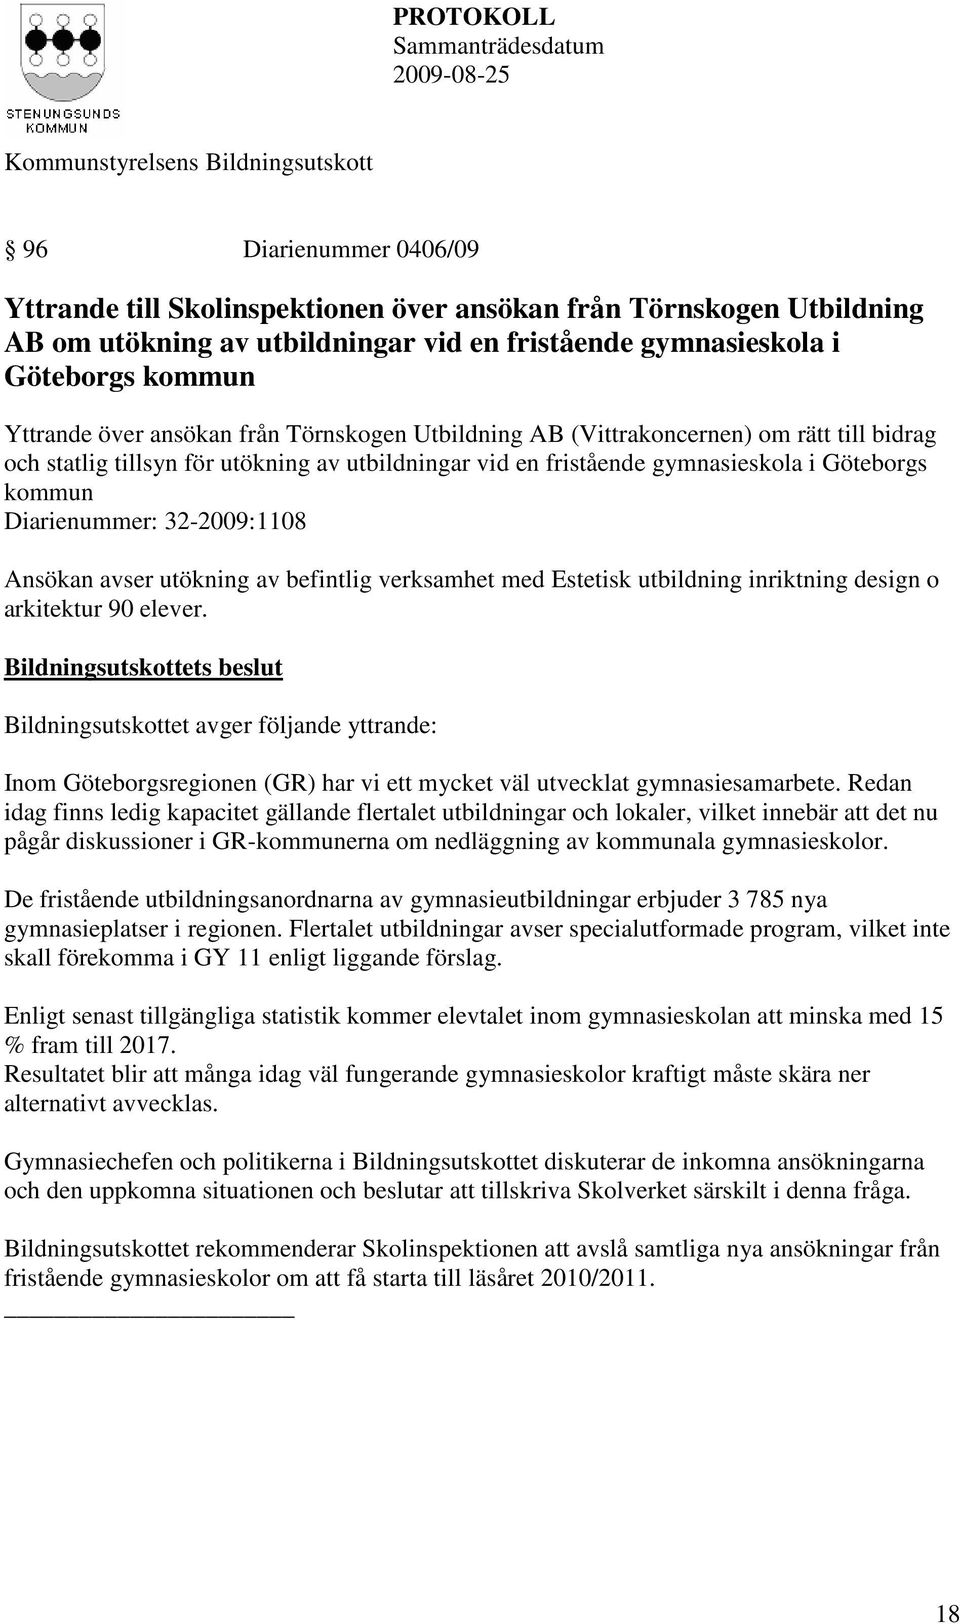 rätt till bidrag och statlig tillsyn för utökning av utbildningar vid en fristående gymnasieskola i Göteborgs kommun